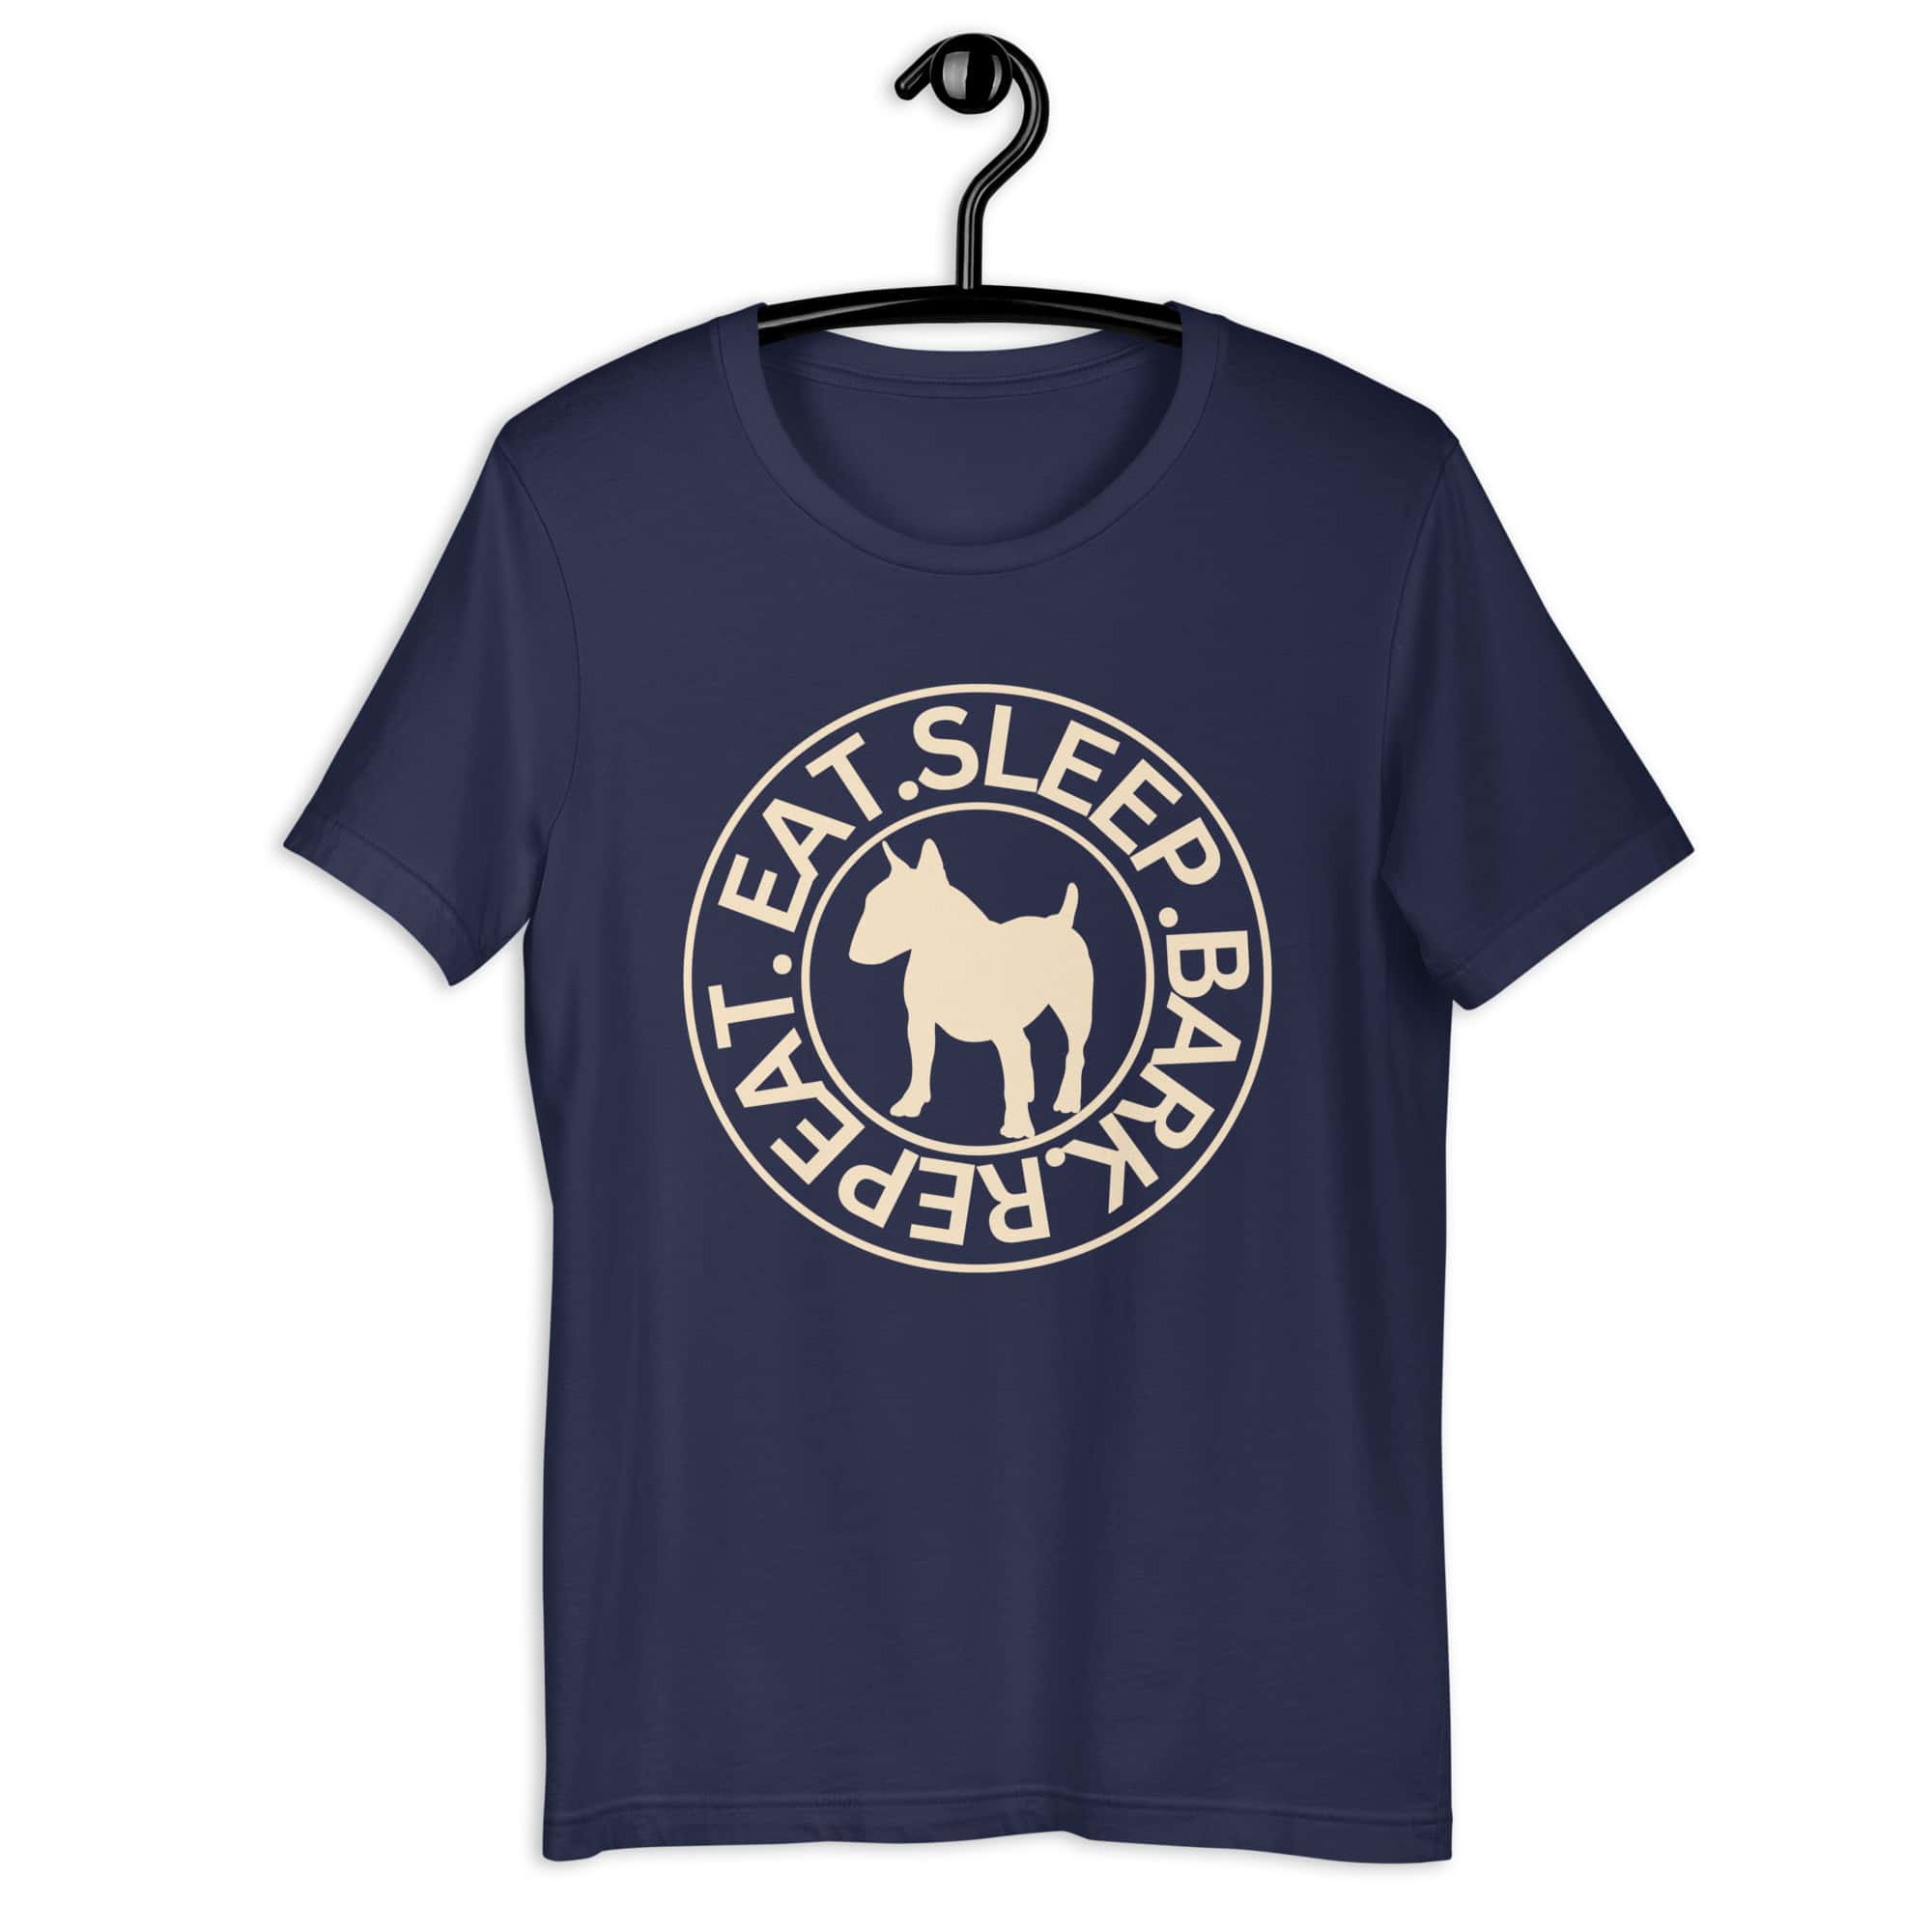 Eat Sleep Bark Repeat Bull Terrier Unisex T-Shirt. Navy